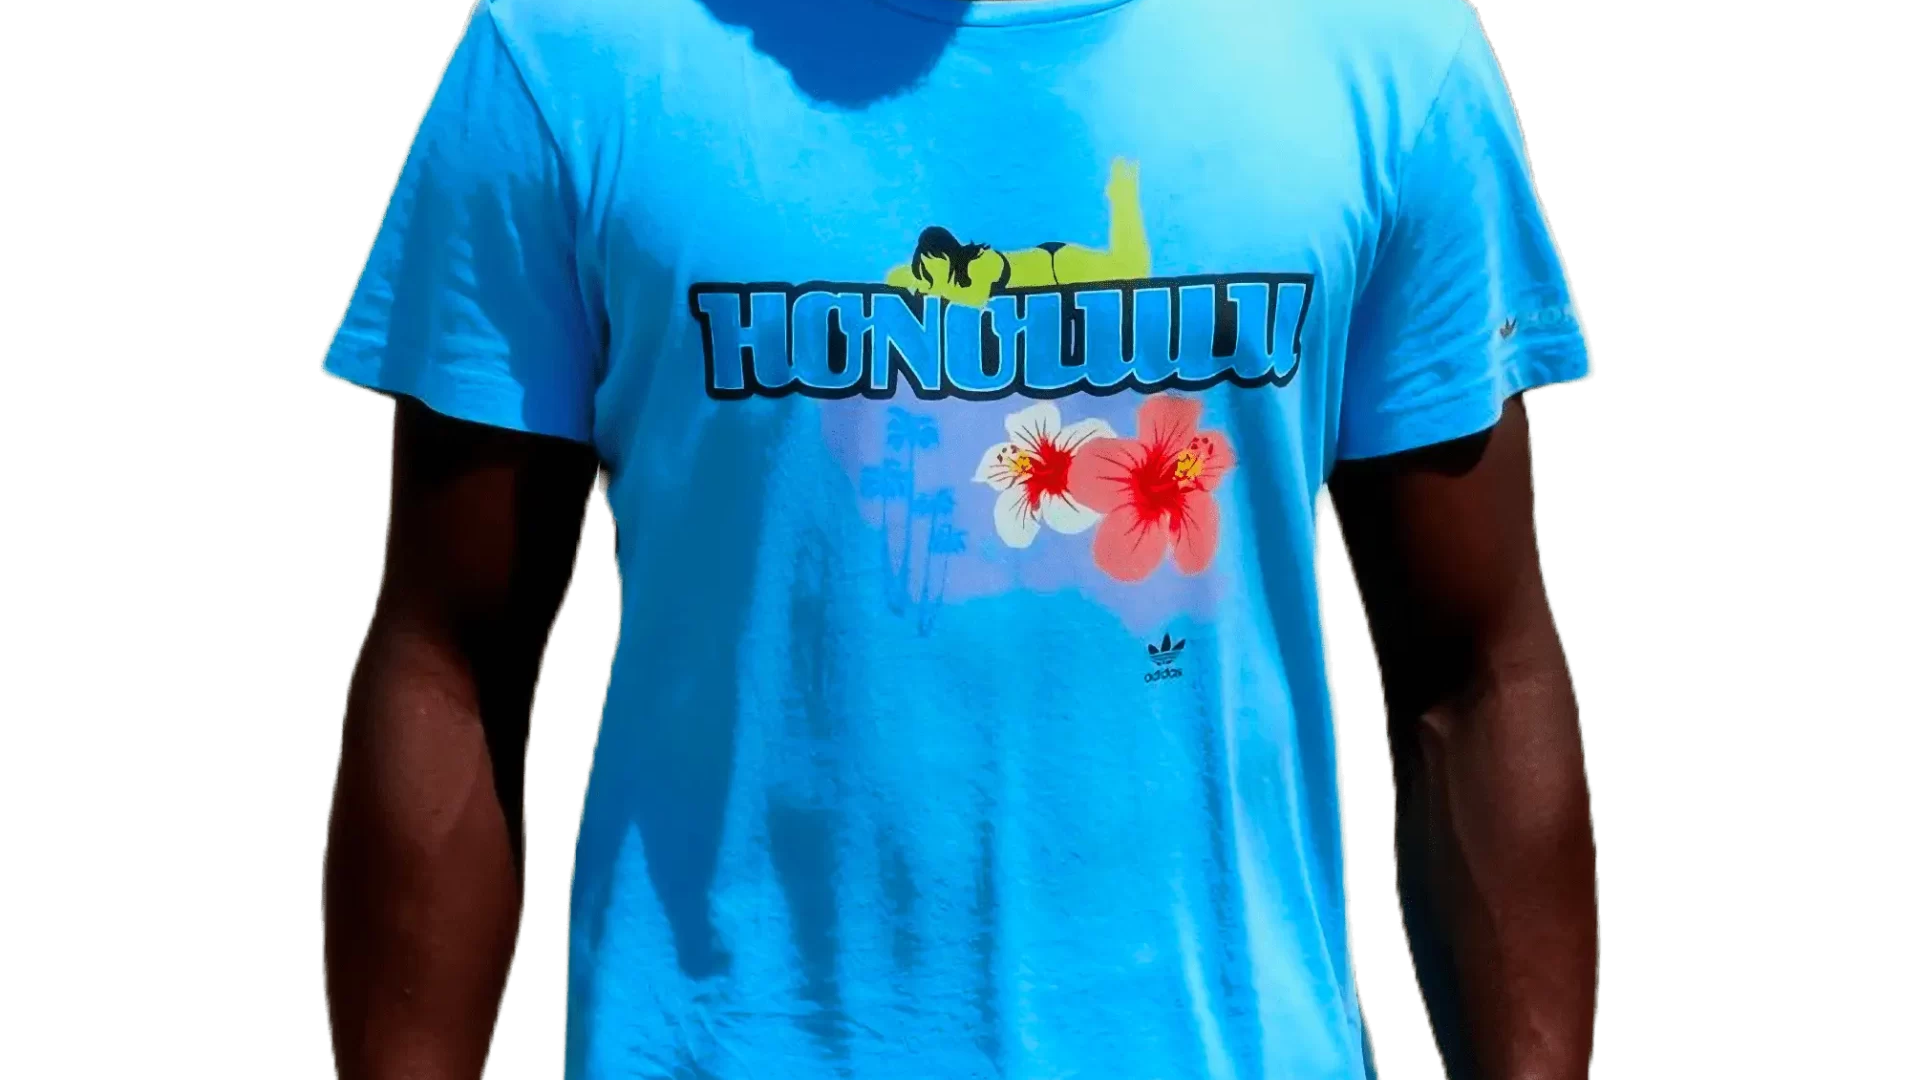 Men's 2007 Honolulu Hawaï TS by Adidas Originals: Eager (EnLawded.com file #lmchk66182ip2y123827kg9st)